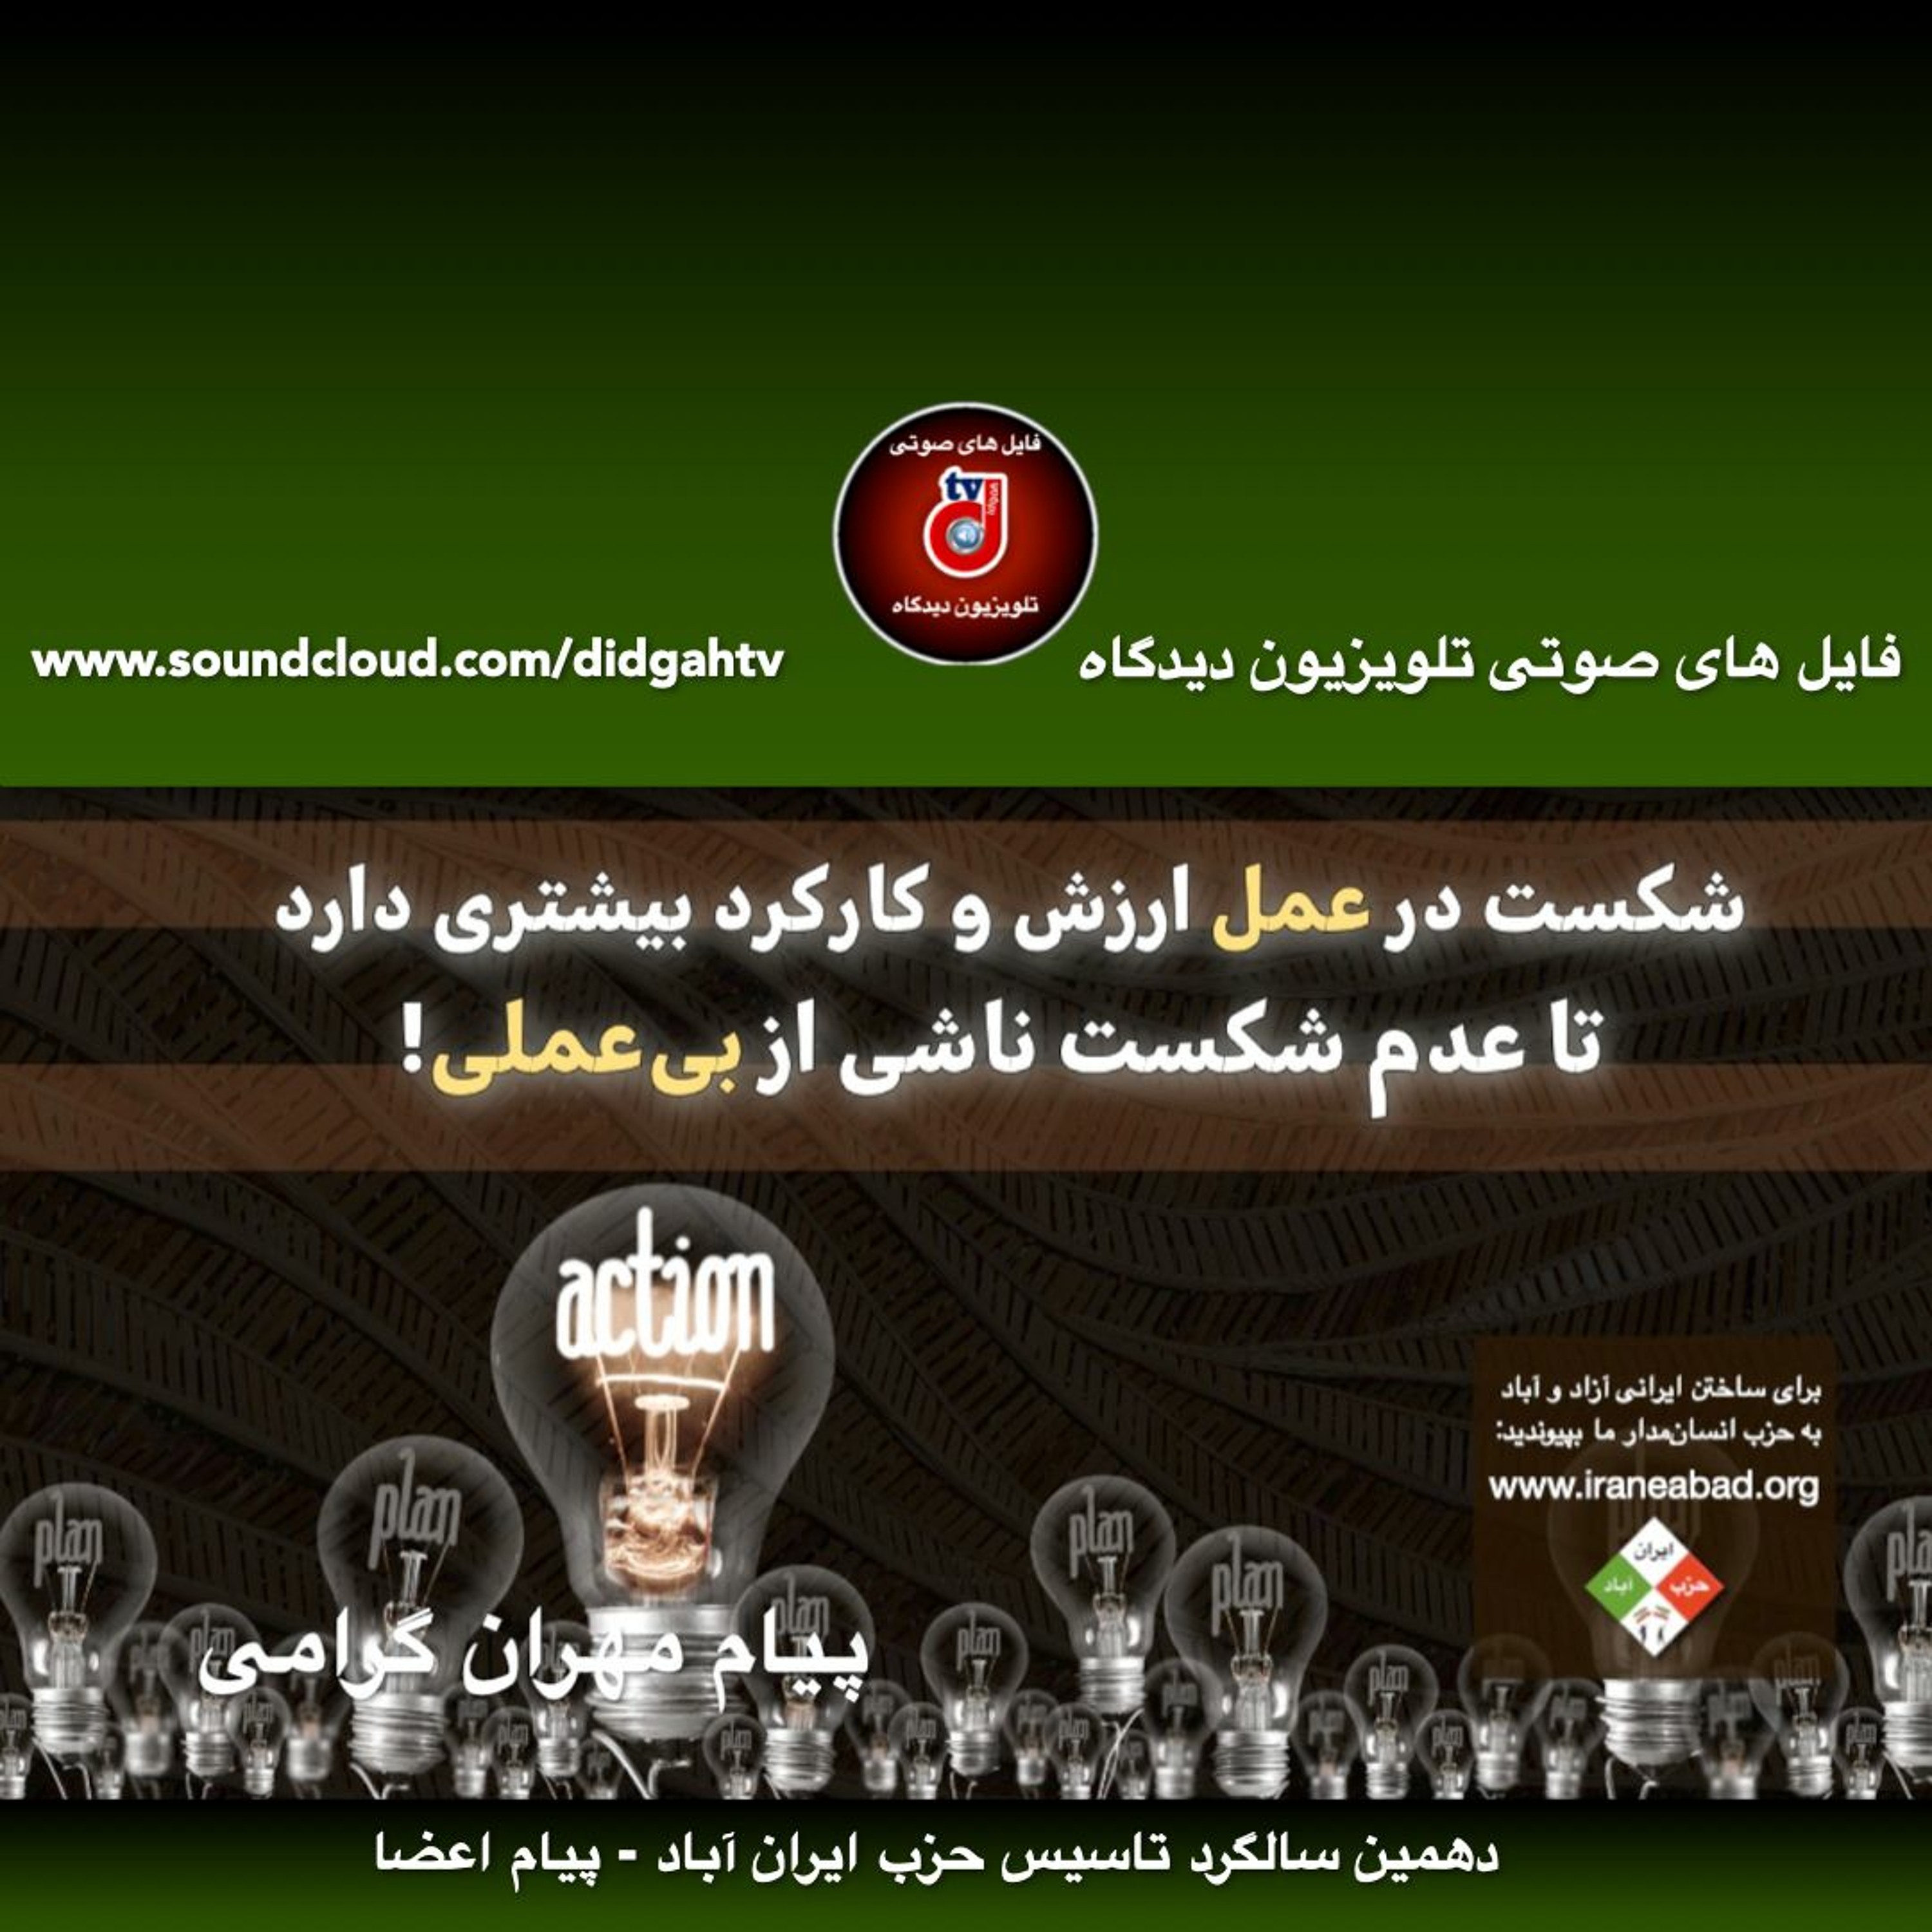 دهمین سالگرد تاسیس حزب ایران آباد - پیام مهران گرامی به این مناسبت